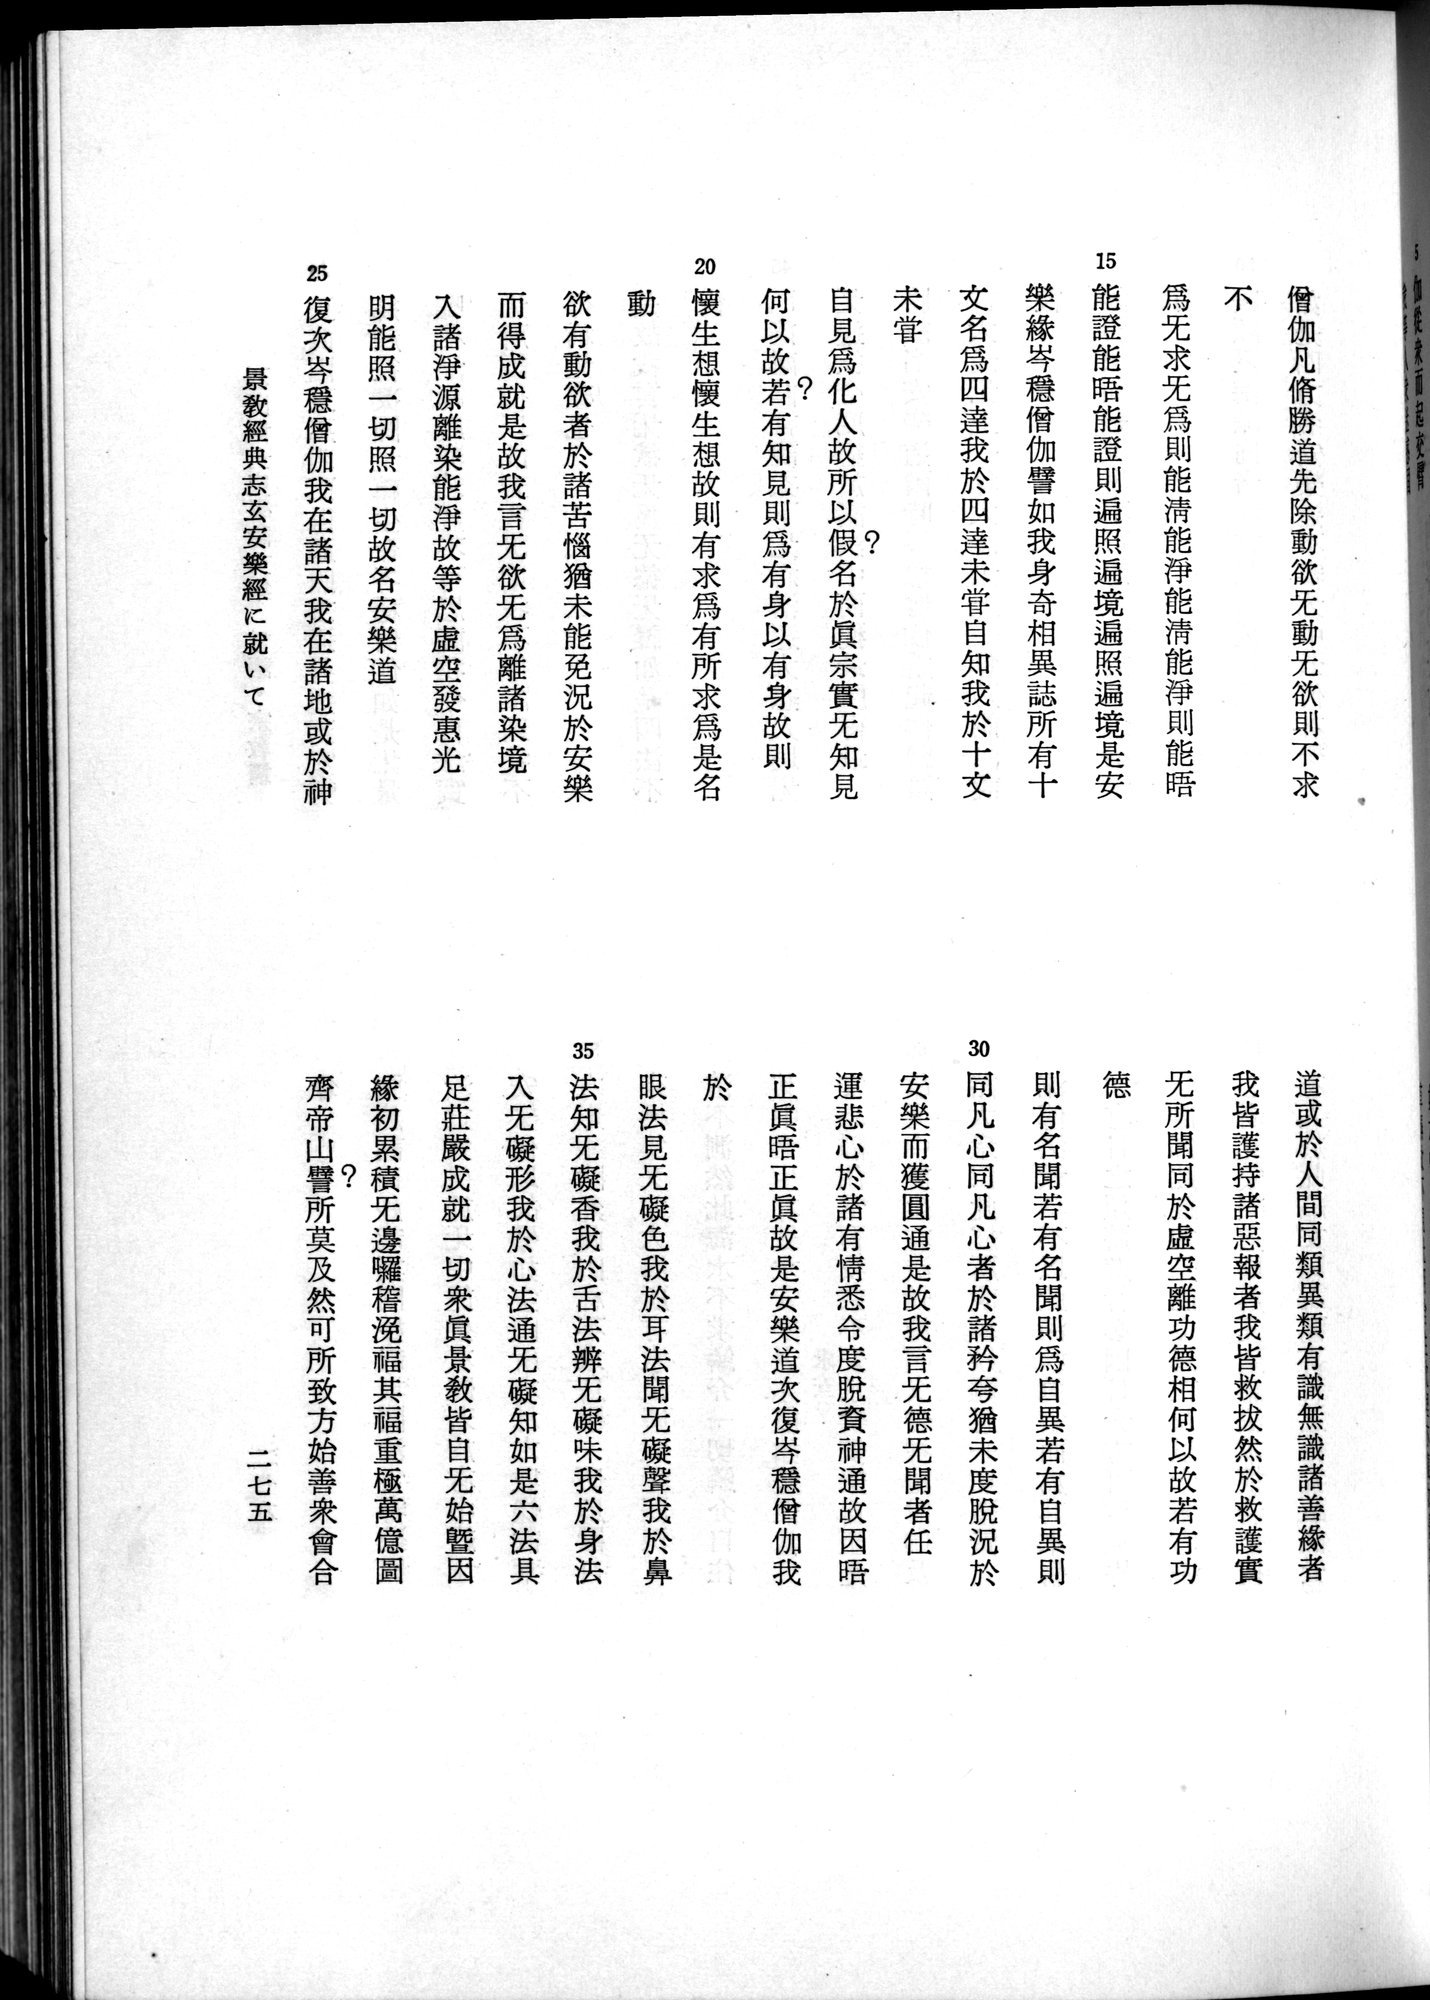 羽田博士史学論文集 : vol.2 / Page 337 (Grayscale High Resolution Image)